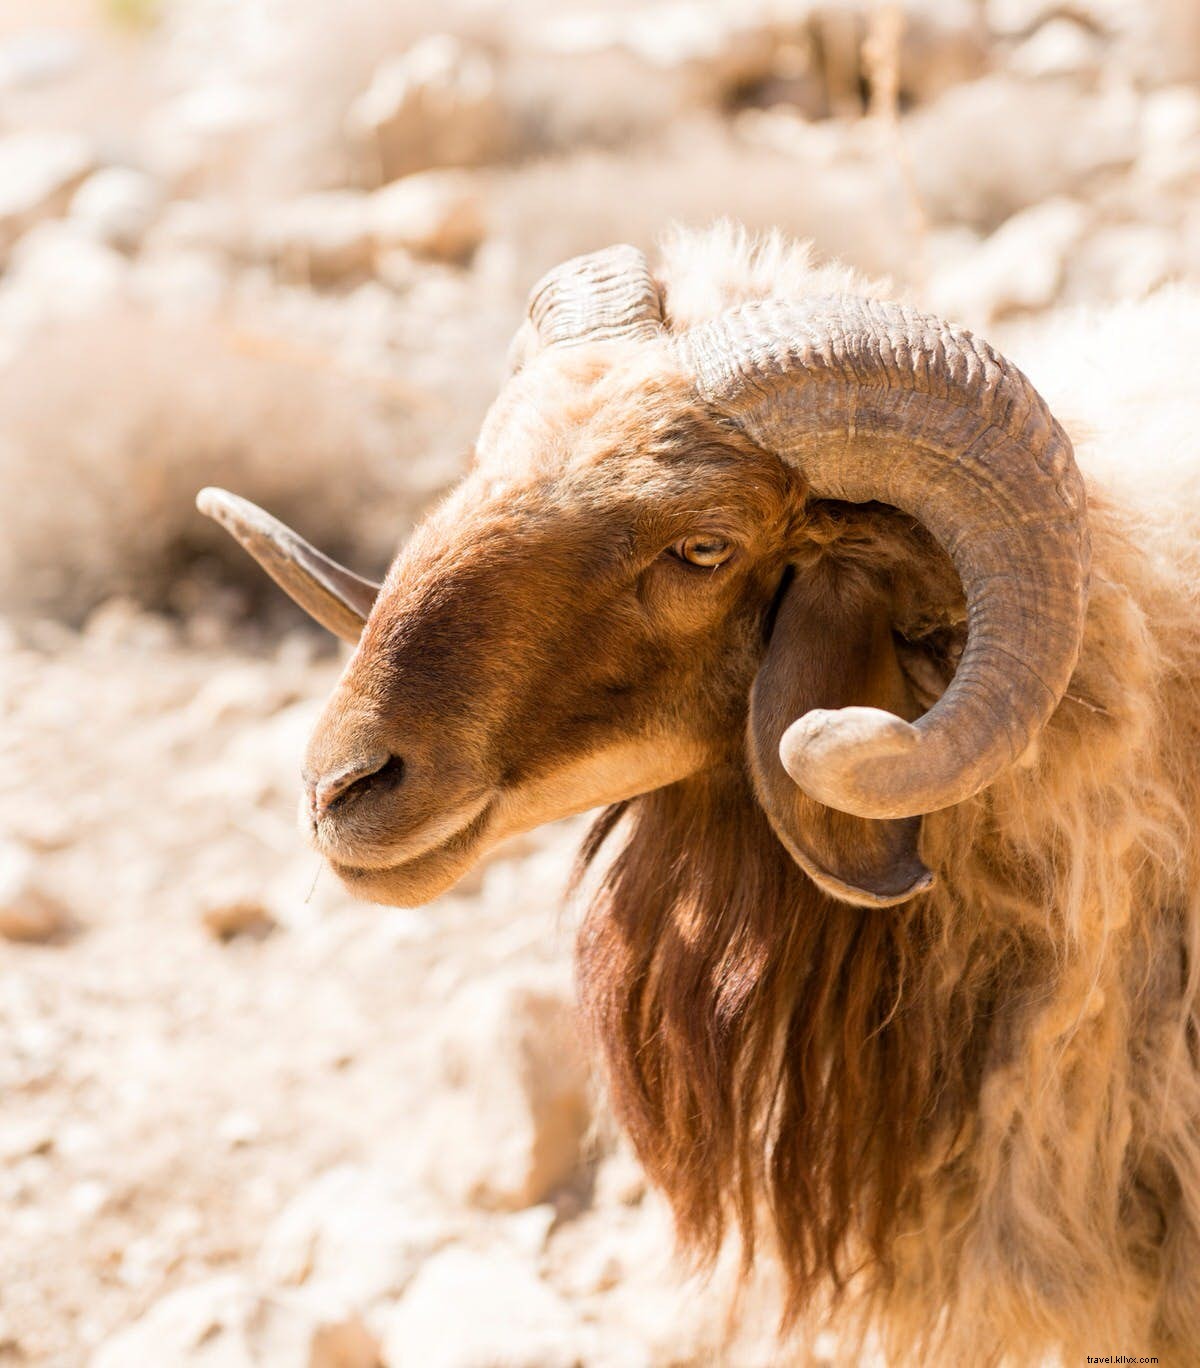 Un escursione sacra:da Wadi Dana a Petra lungo il Jordan Trail 